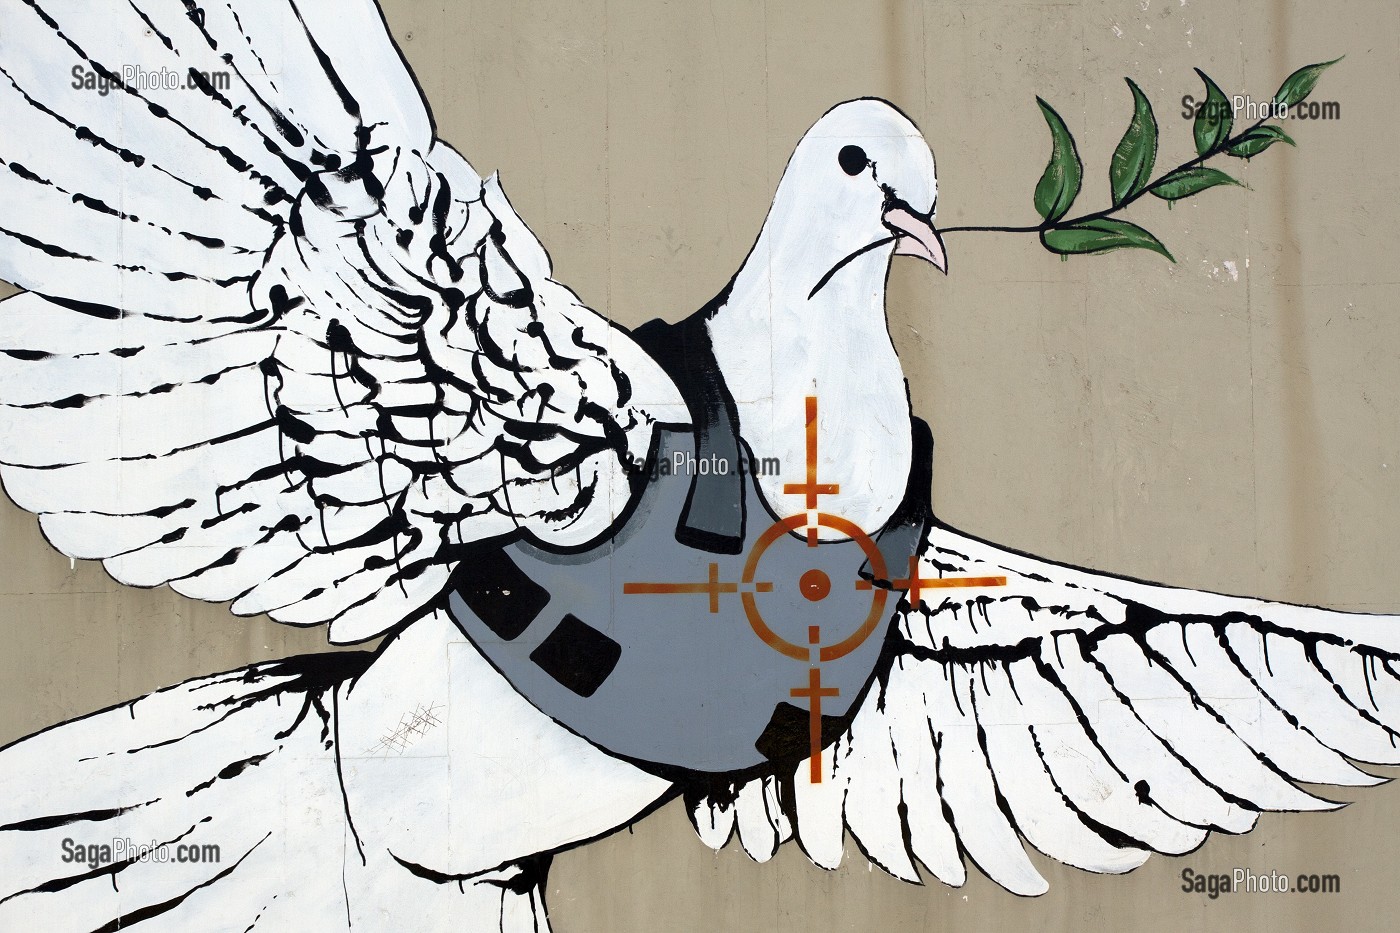 Photo De Colombe De La Paix Equipee D Un Gilet Pare Balle Dans La Ligne De Mire D Un Fusil Dessin Du Graffeur Britannique Banksy Sur Un Mur De Bethleem Cisjordanie Autorite Palestinienne